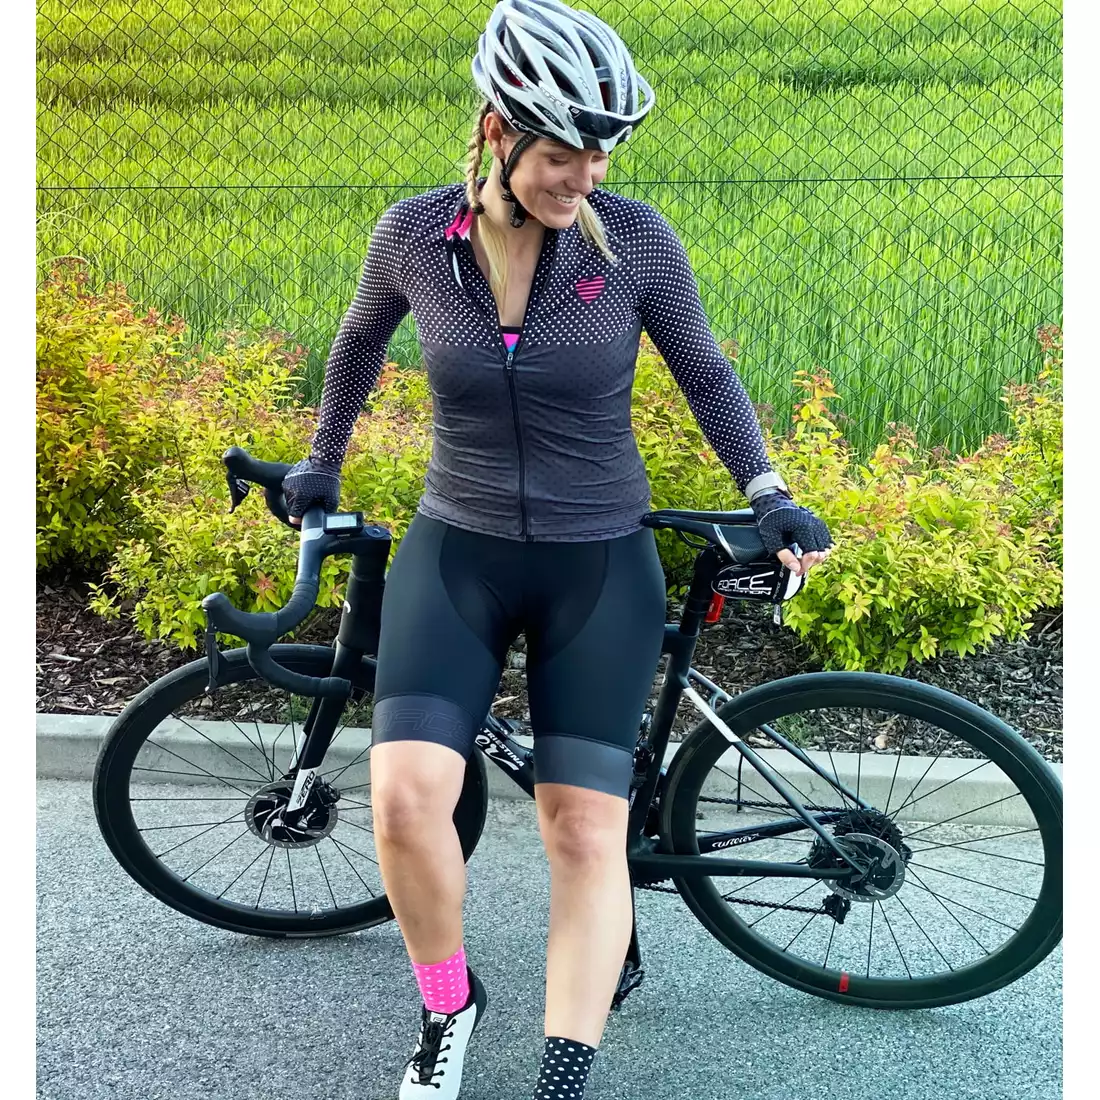 Cycling Clothing Women's Cycling Bicycle Jerseys Lady Bike Shirt Top Pink Gear 